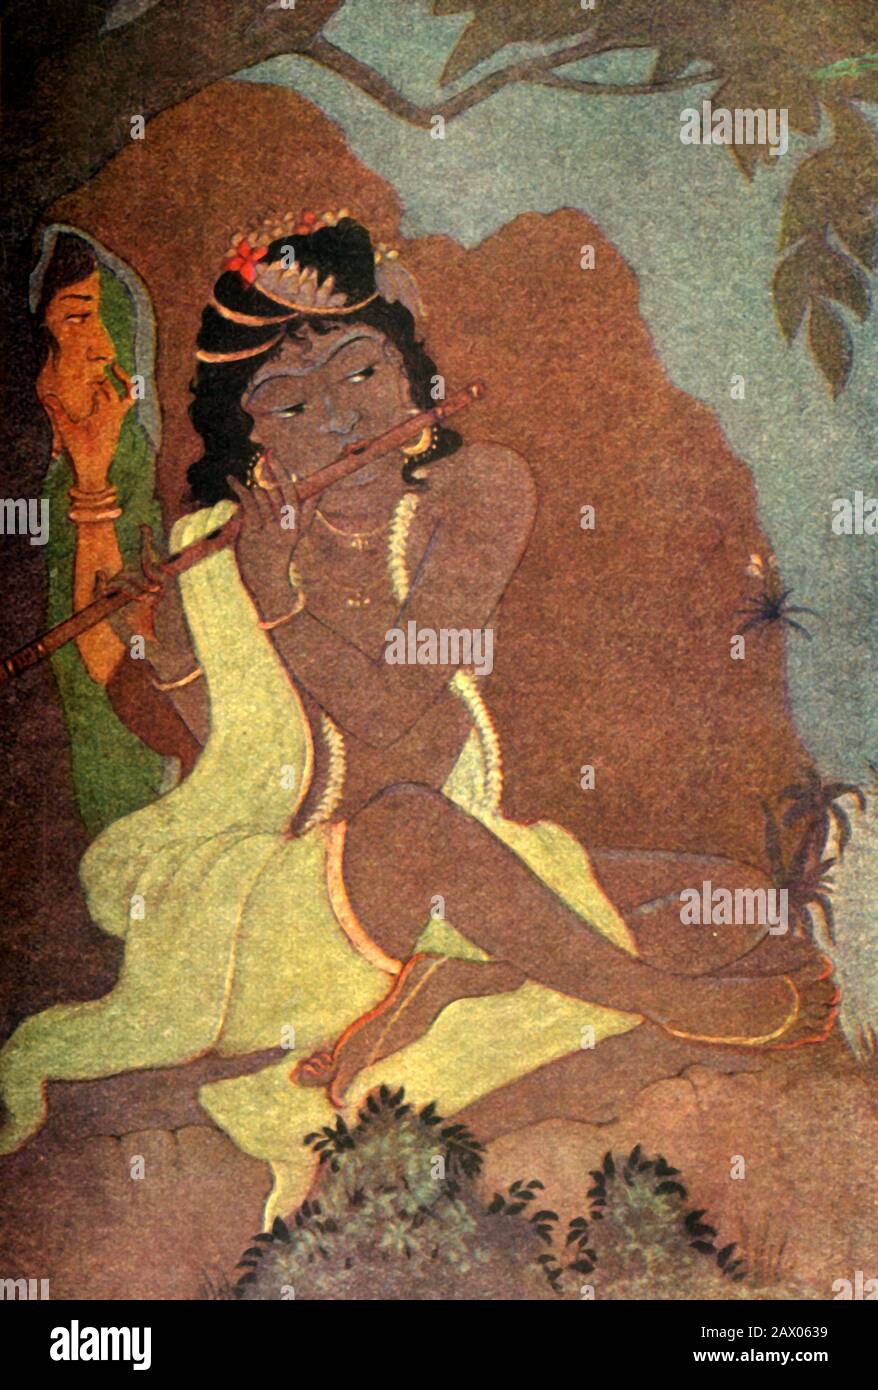 'Radha y Krishna', 1920. Radha y Krishna son las realidades femeninas y masculinas de Dios. Krishna encanta el mundo, Radha lo encanta incluso, el amor espiritual entre ellos es un tema celebrado en toda la India. De "Mitos de los hindúes &amp; Budistas", por la Hermana Nivedita y Ananda K. Coomaraswamy. [George G. Harrap &amp; Company Ltd, Londres, 1920] Foto de stock